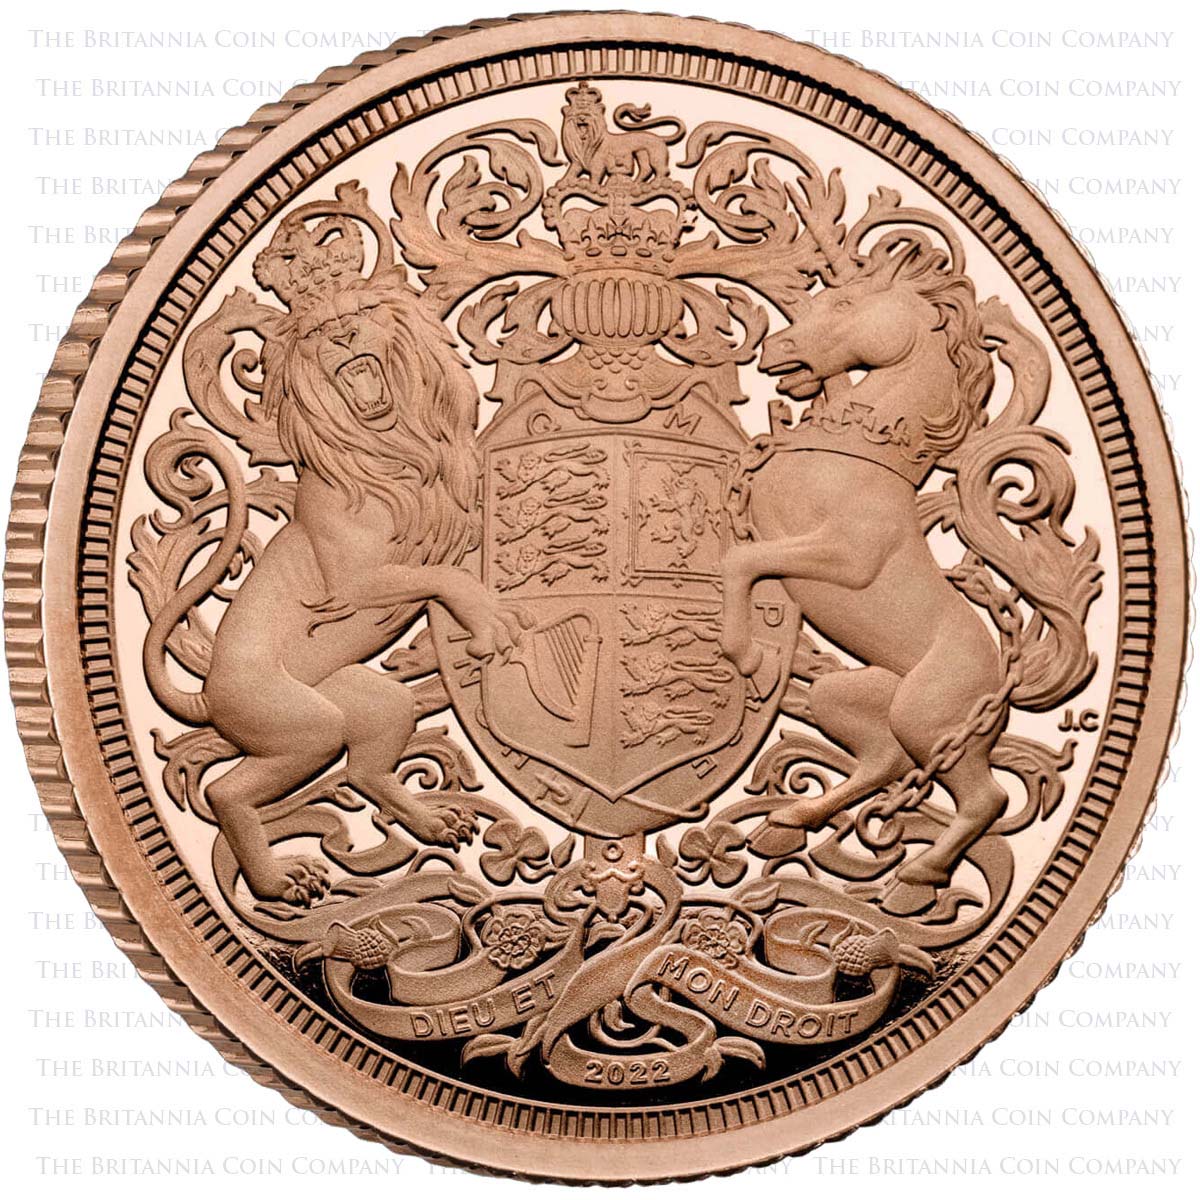 MSVH22 2022 Charles III Gold Proof Half Sovereign Queen Elizabeth II Memorial Reverse